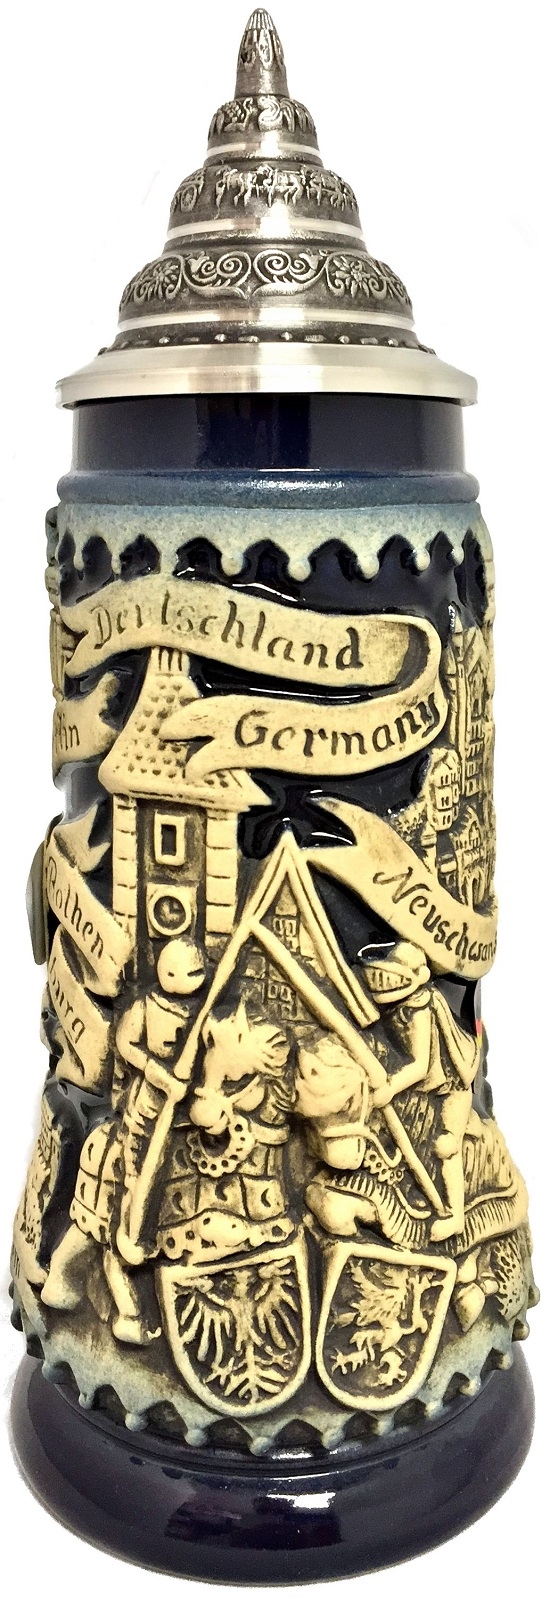 Blue Deutschland Germany Jousting Medieval Knights LE German Beer Stein .3 L